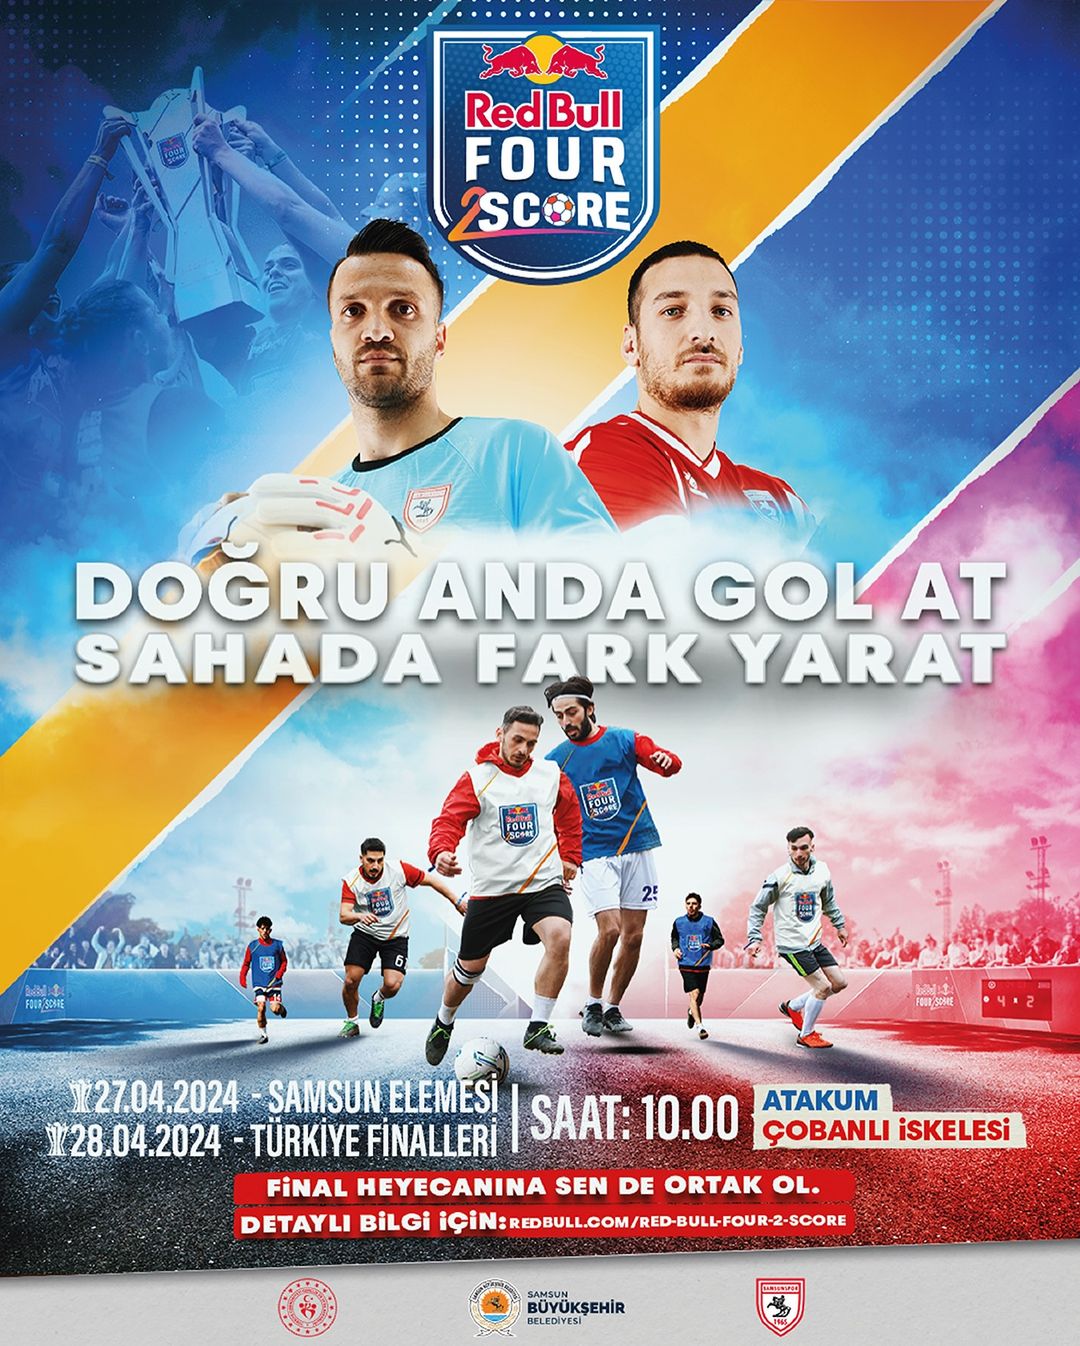 Samsun'da Düzenlenen Sokak Futbolu Turnuvası Finalleri Yaklaşıyor